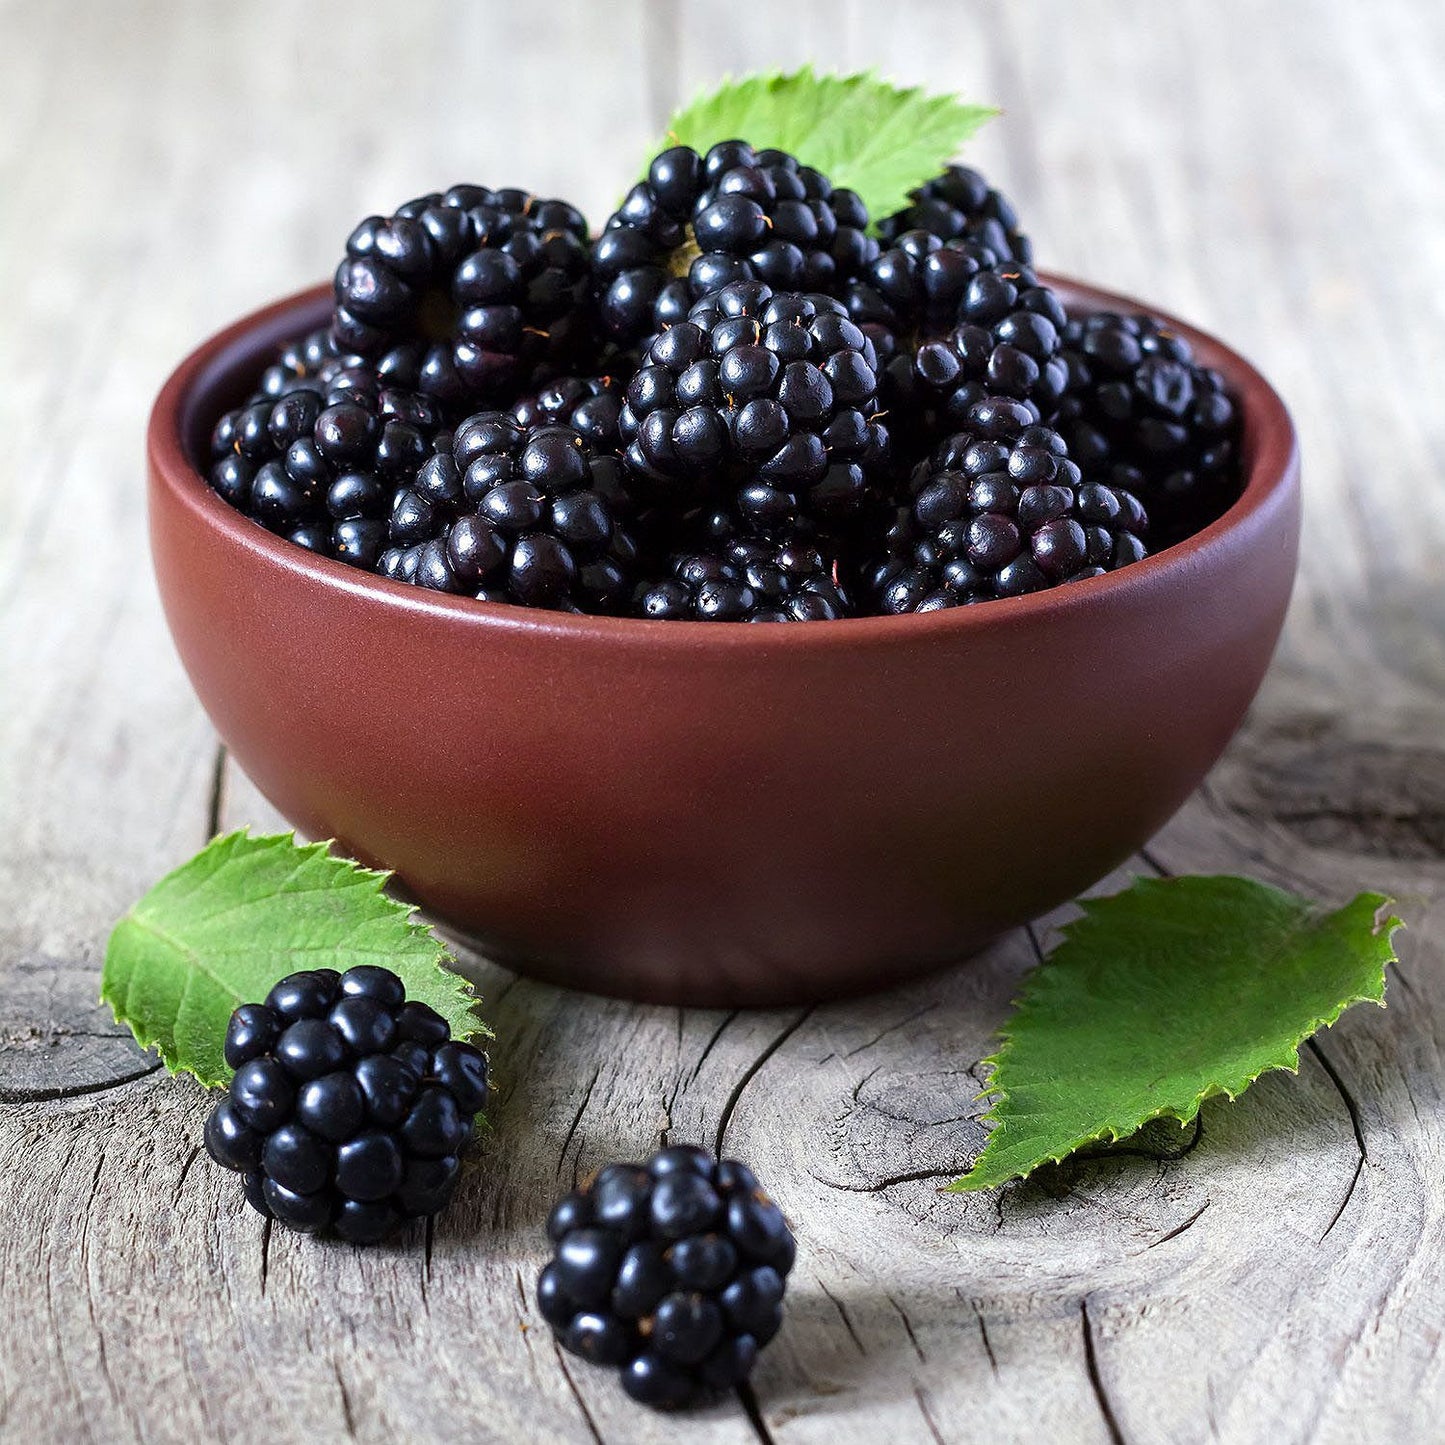 Blackberries (18 oz.)